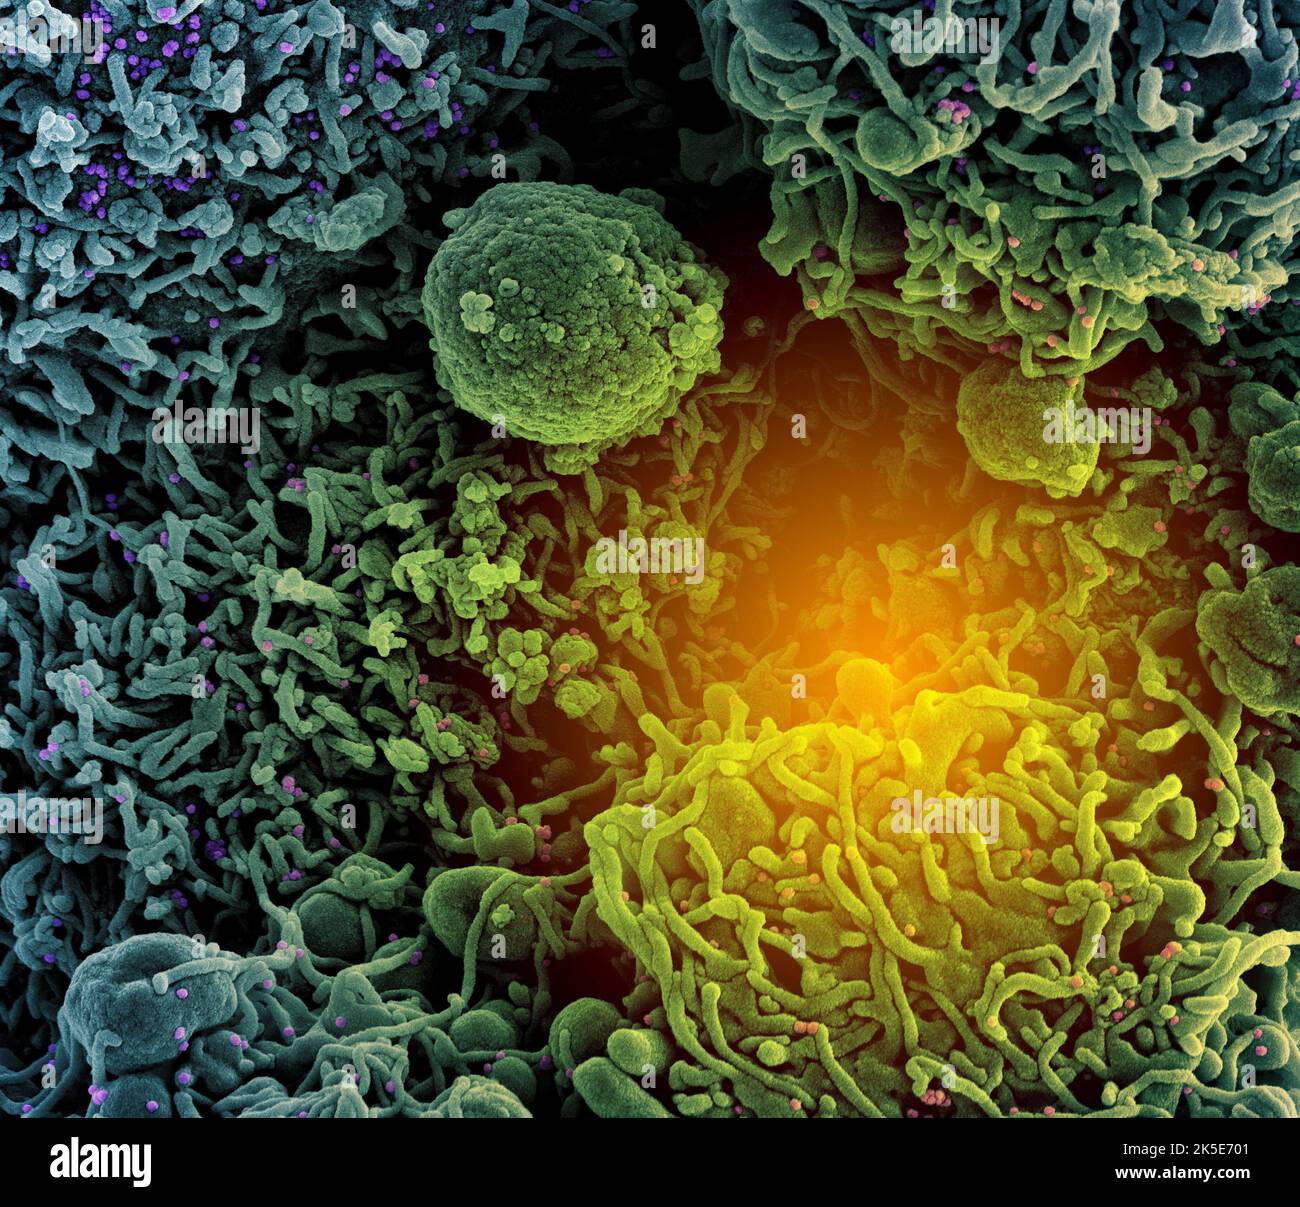 Nuevo coronavirus SRAS-CoV-2. Micrografía electrónica coloreada de una célula (verde azulado) infectada con una cepa variante de partículas del virus del SARS-CoV-2 (UK B.1.1.7- púrpura y rosa), aislada de una muestra de paciente. Imagen capturada en la Instalación Integrada de Investigación (IRF) de NIAID en Fort Detrick, Maryland. Una versión compuesta única optimizada y mejorada de seis imágenes micrográficas electrónicas de barrido, crédito: NIAID Foto de stock